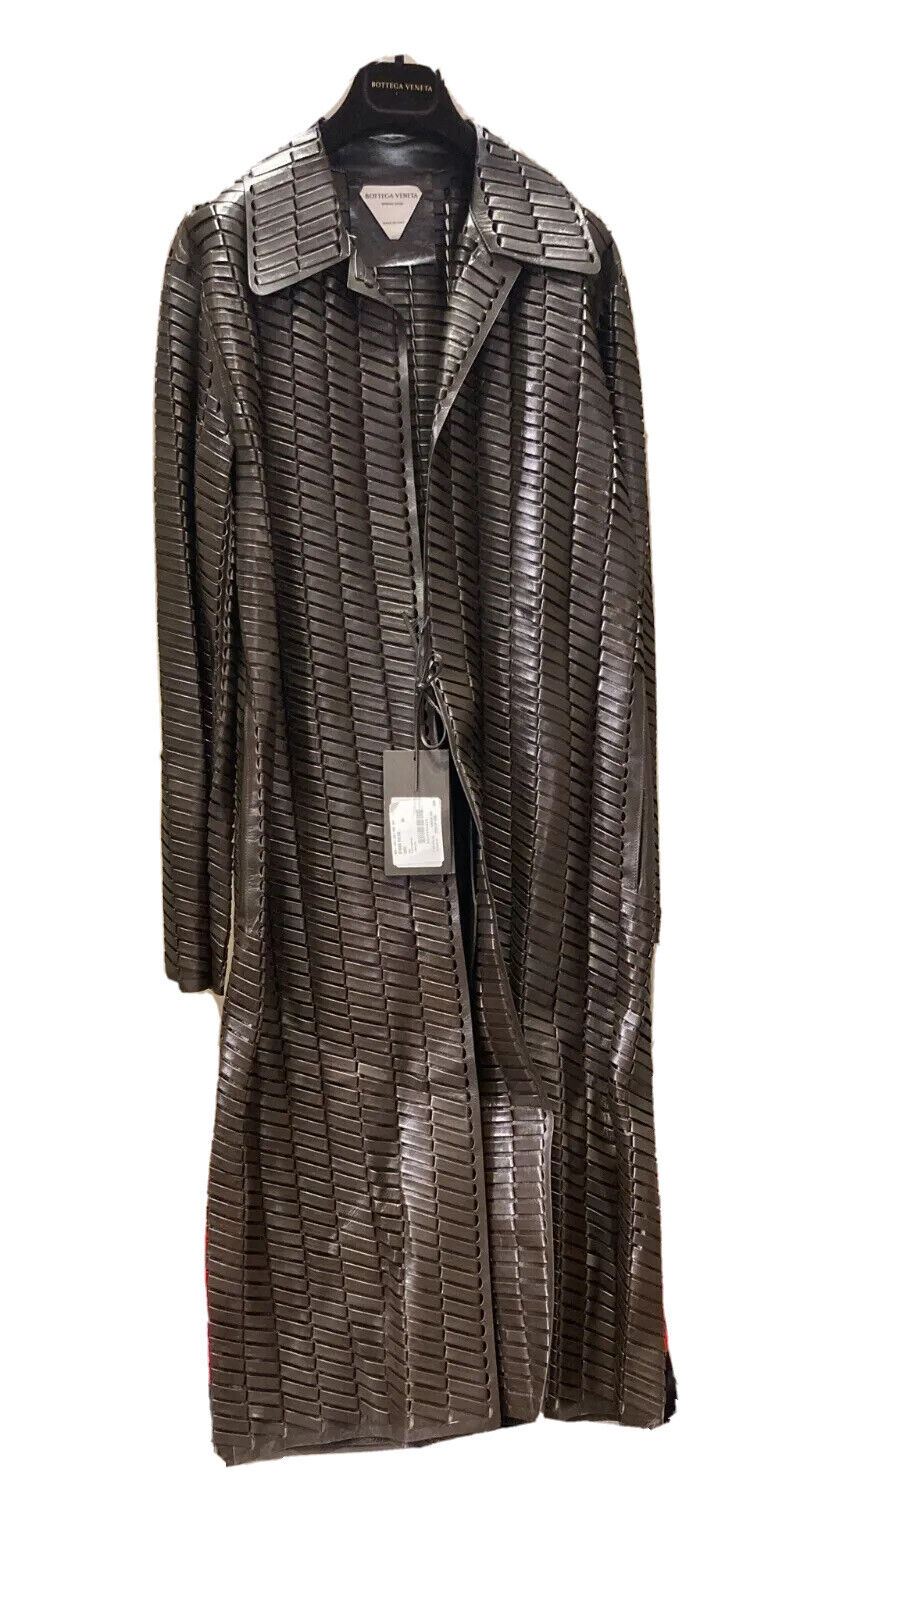 NWT $14900 Bottega Veneta Женское тканое блестящее кожаное пальто шоколадного цвета 38R 618482 